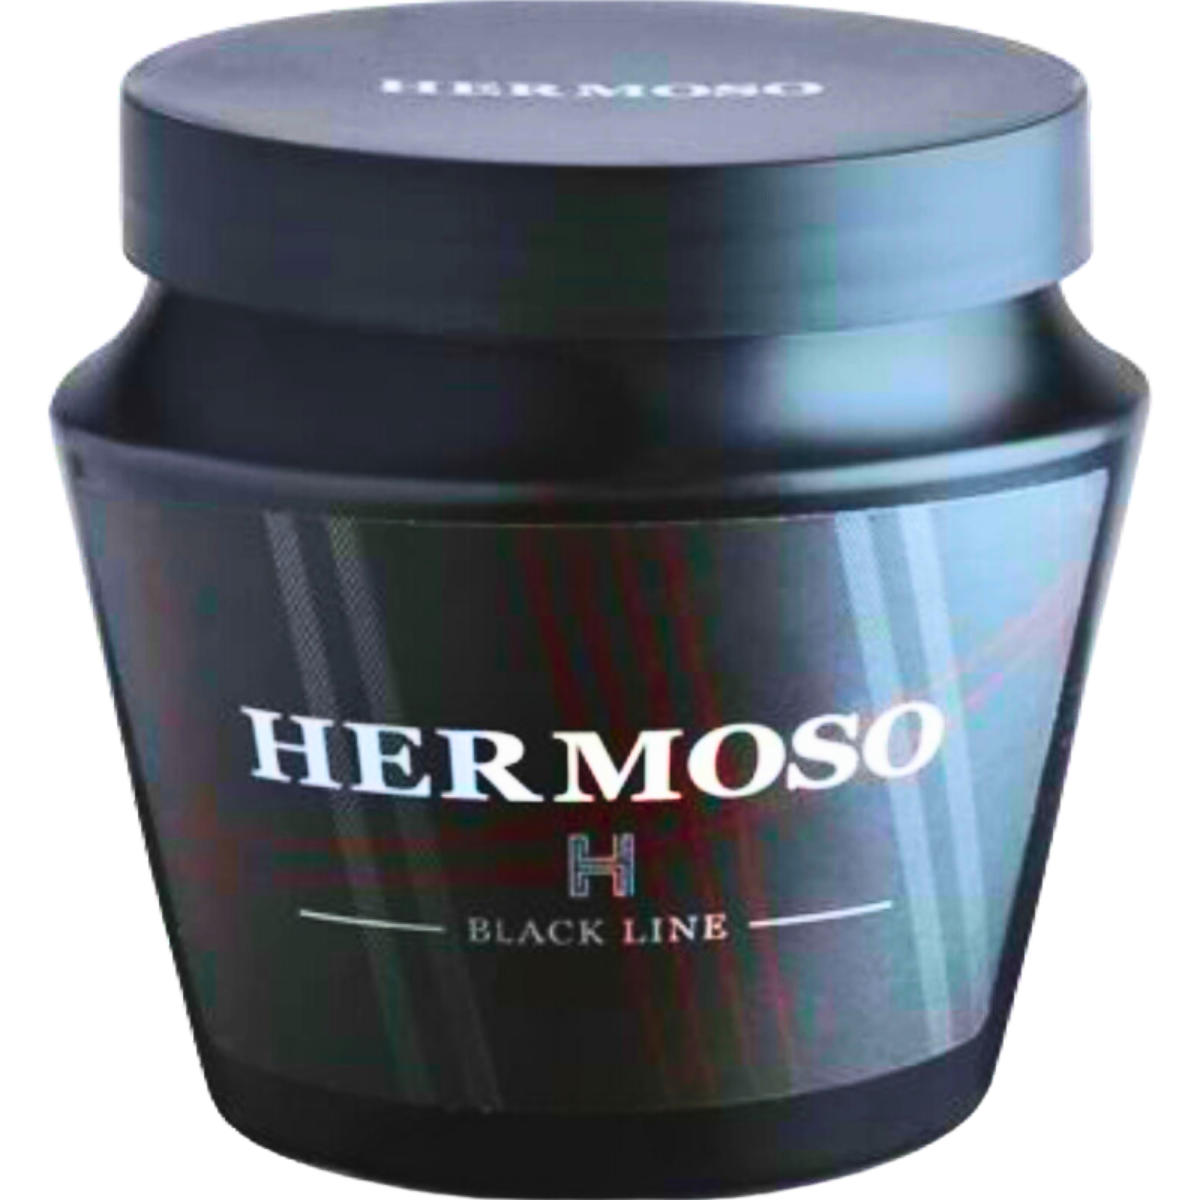 מסכת HERMOSO ללא מלחים לשיער יבש ולשיער שעבר טיפולים כימיים רבים הרמוסו 500 מ"ל